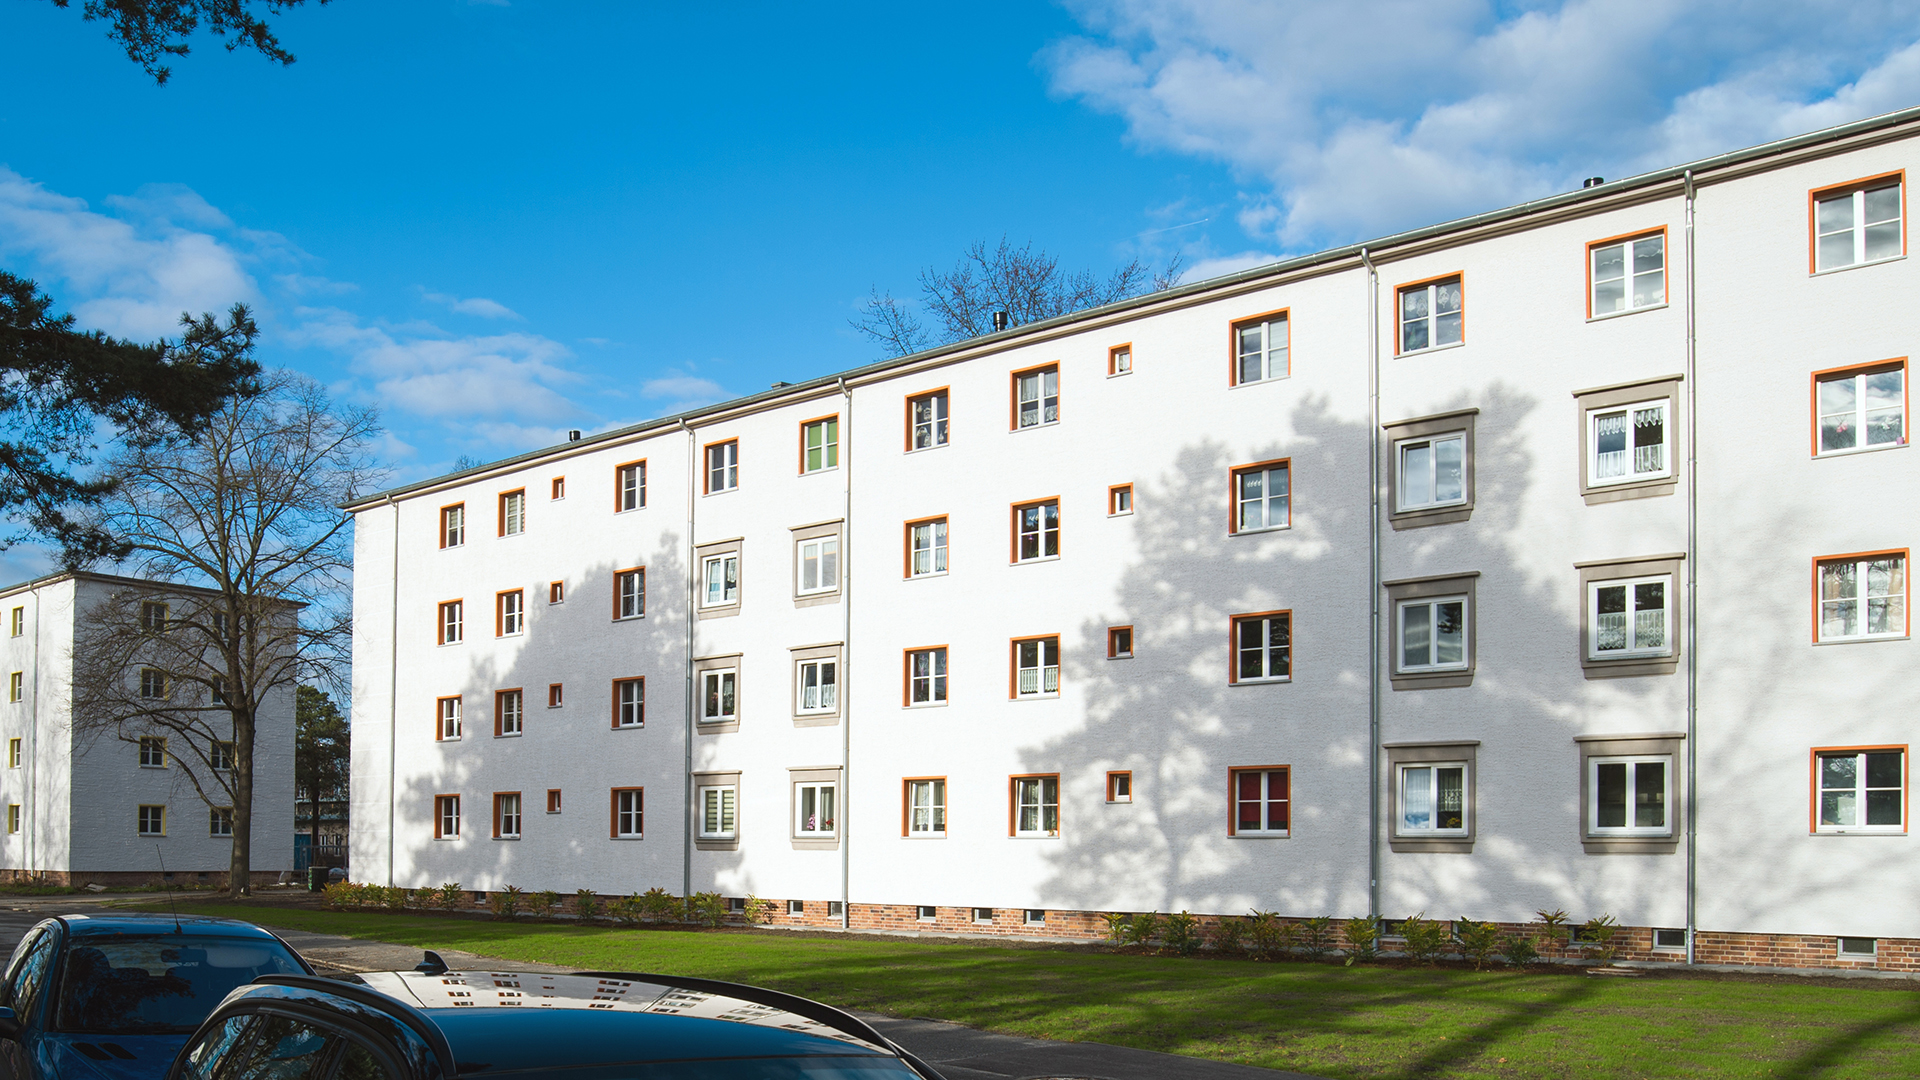 Sanierte Wohnhäuser aus DDR-Zeiten in Eisenhüttenstadt | picture alliance / dpa